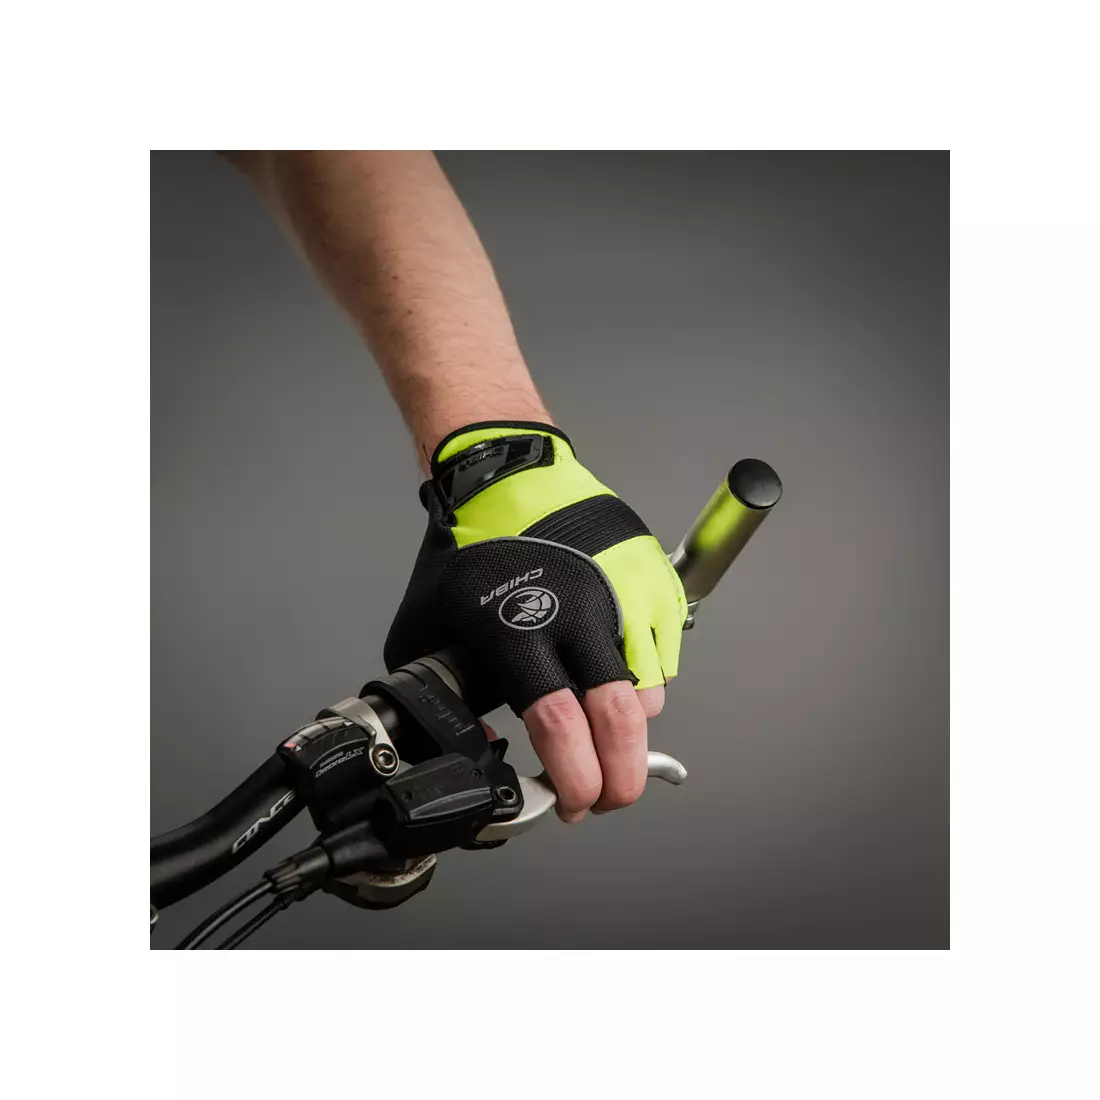 CHIBA mănuși de ciclism bioxcell galben neon 3060120